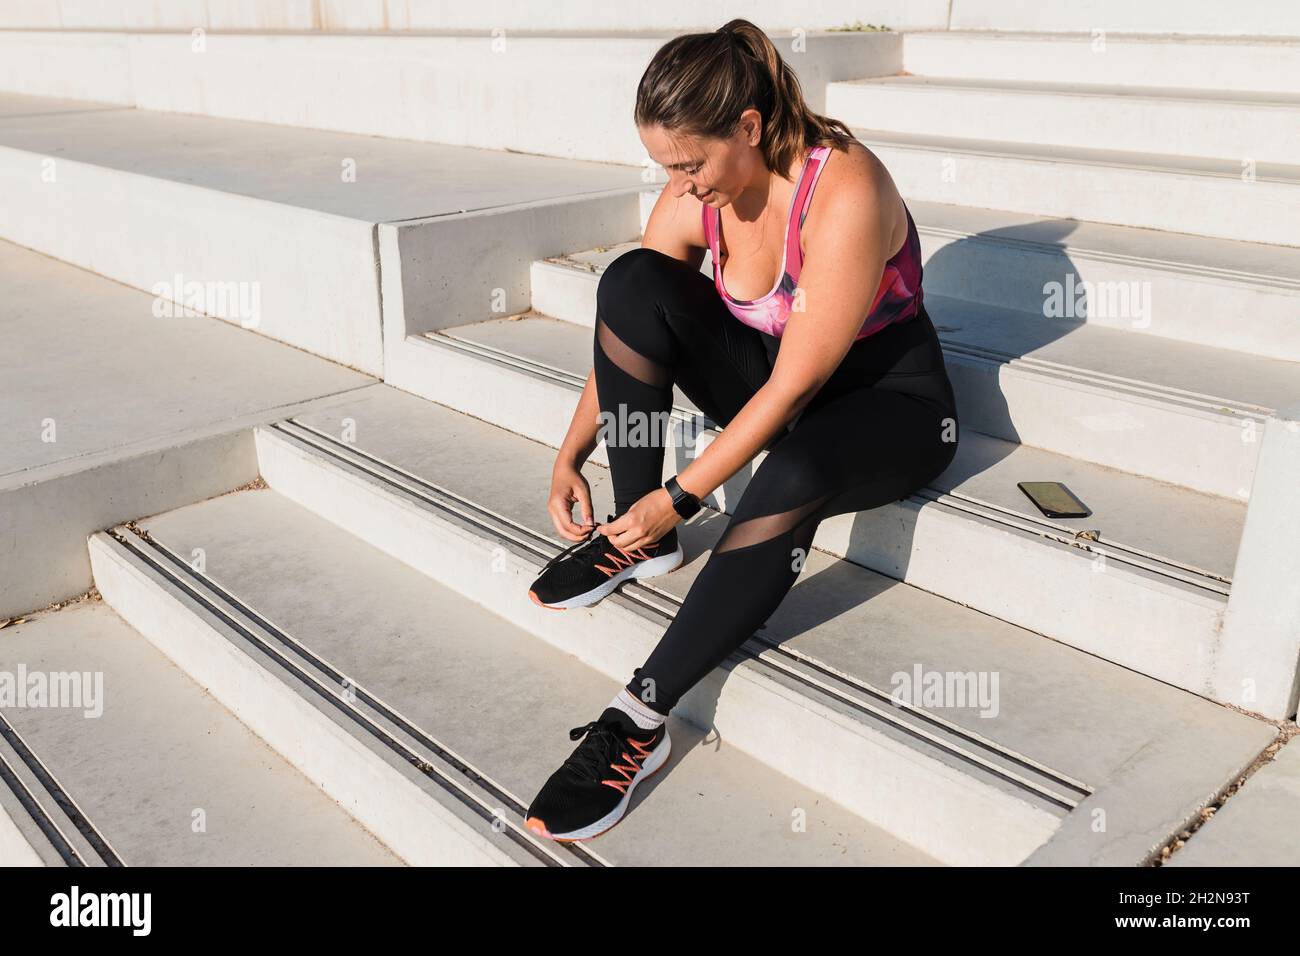 Female athlete tying shoelace while sitting on steps Stock Photo